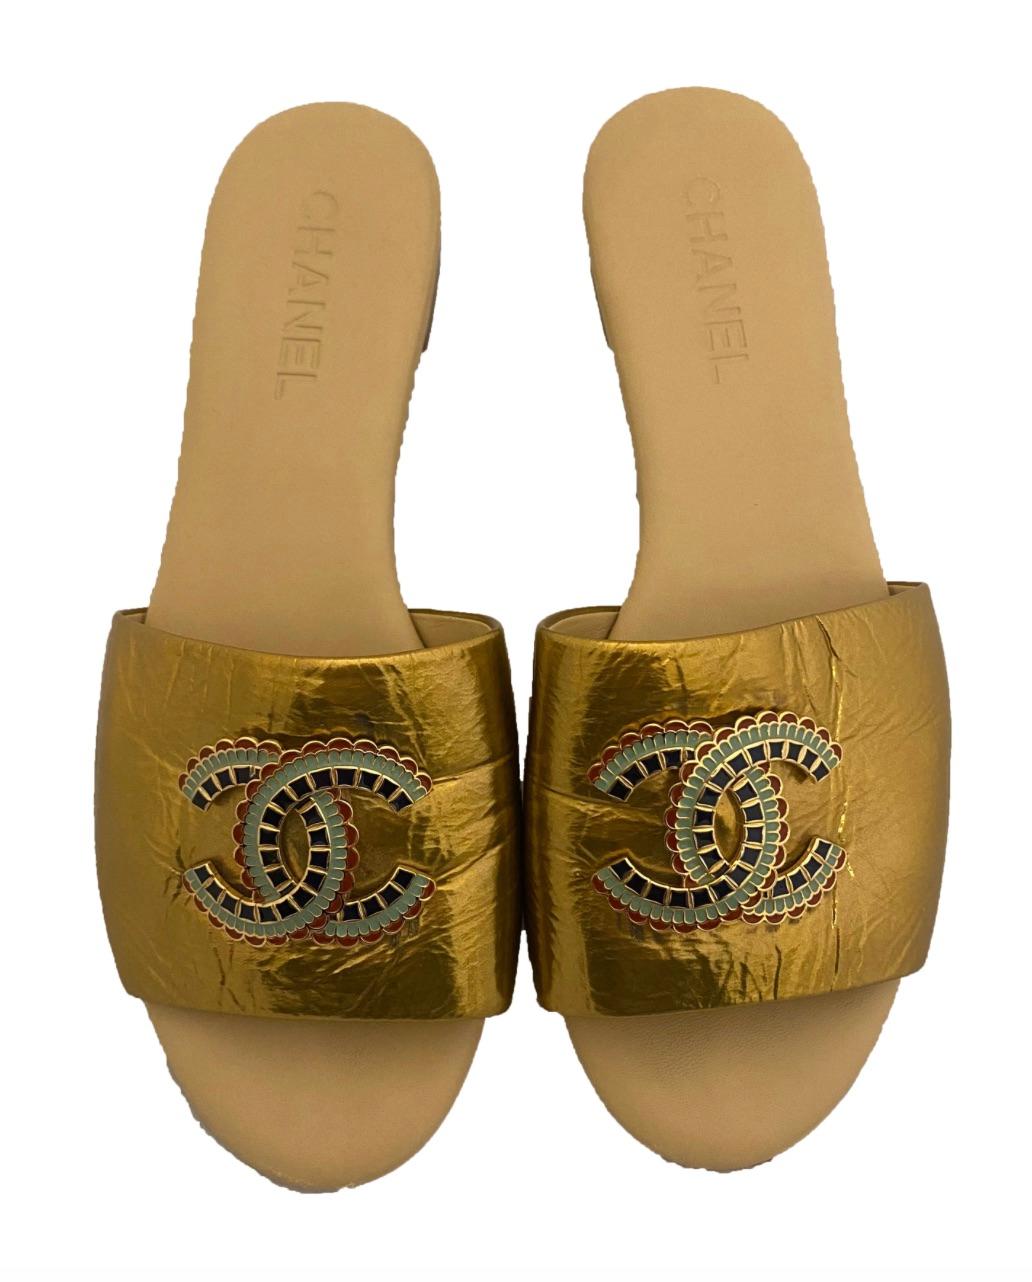 Sandales en cuir verni métallisé doré de Chanel. Issue de la collection égyptienne Chanel Pre-Fall Metiers d'Arts de 2019, qui a été présentée au Metropolitan Museum of Art. Chaque bride de l'orteil en vernis métallique doré est ornée d'un large CC